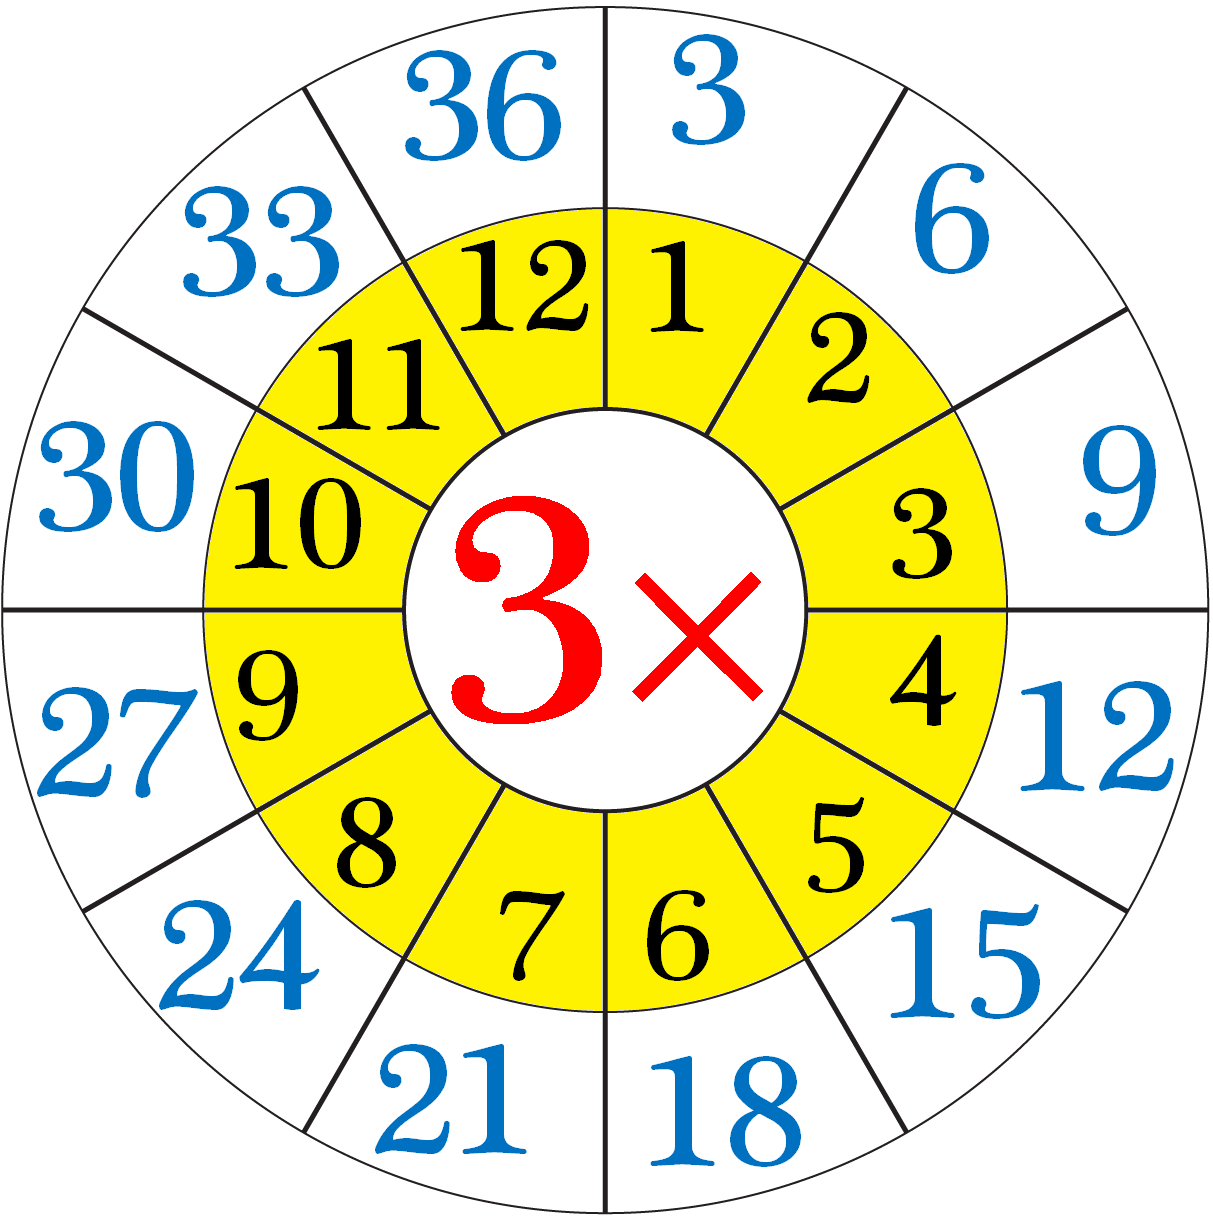 Multiplication Table For 3 S Worksheet